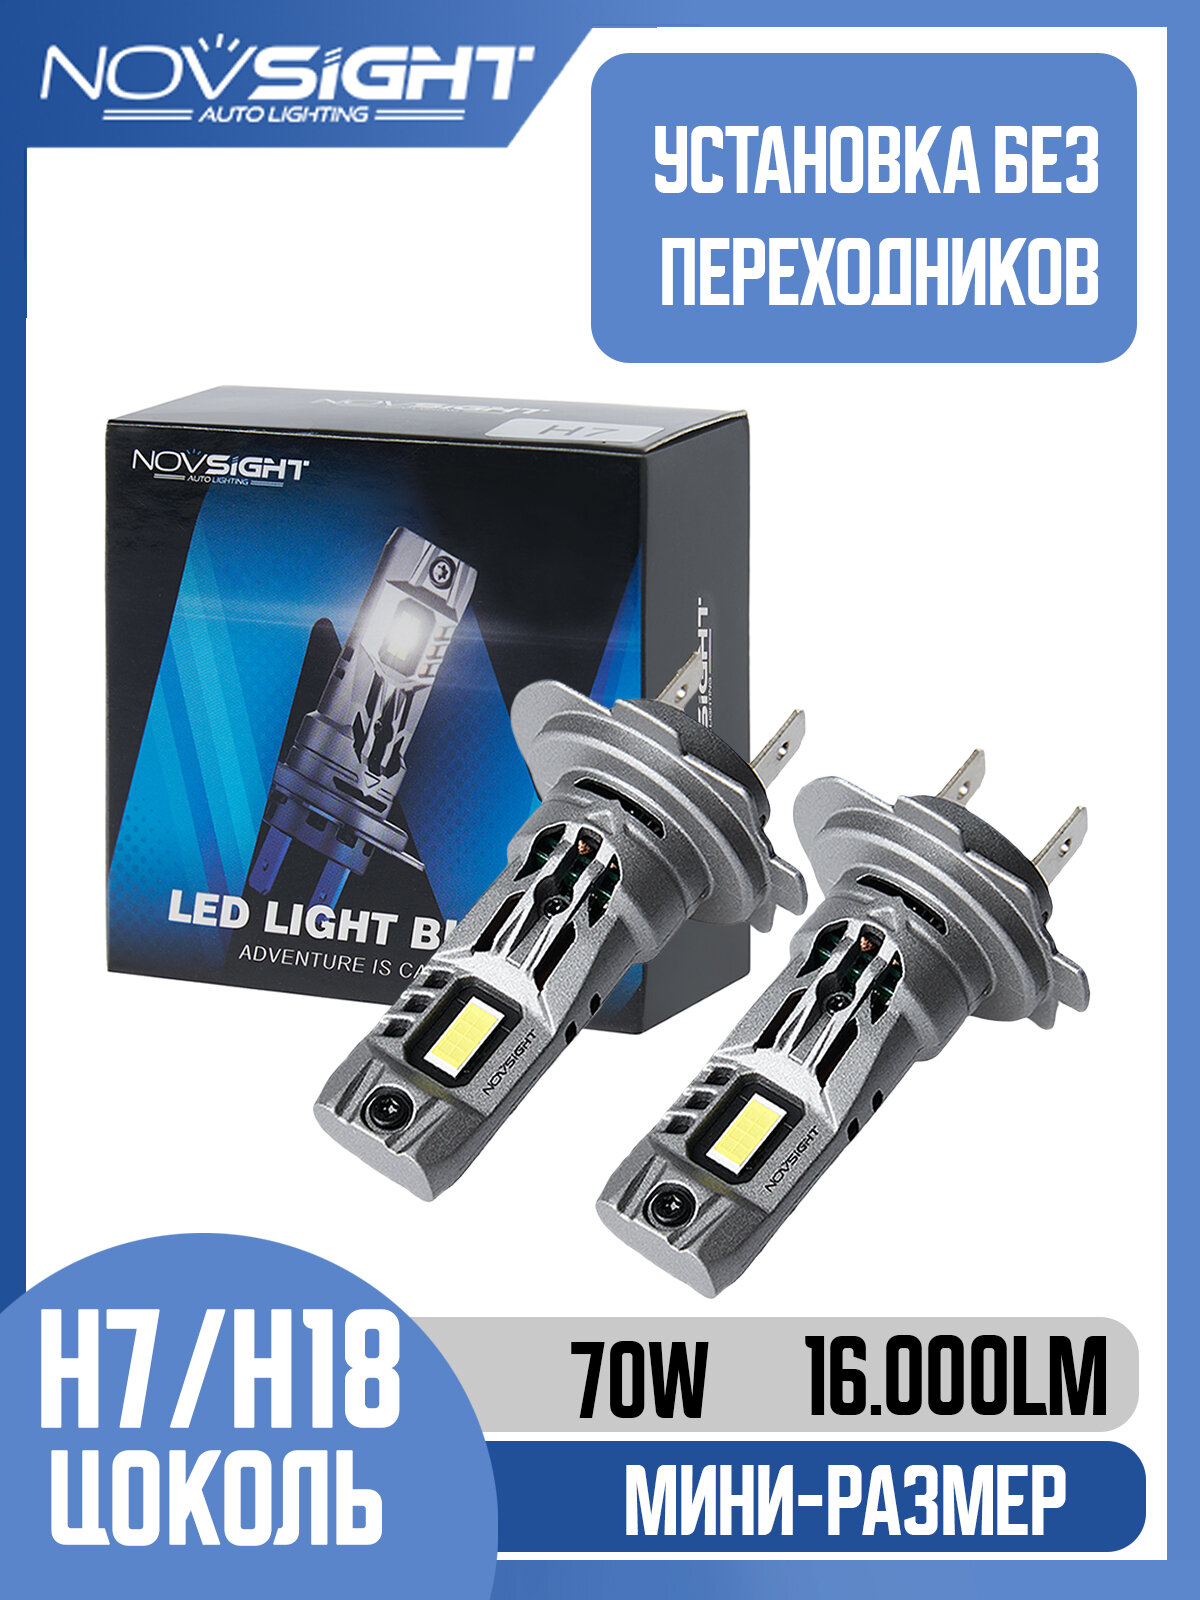 Светодиодная лампа Novsight N63 H18 цоколь PY26d-1 70Вт 2шт 6500К 16000Лм белый свет LED